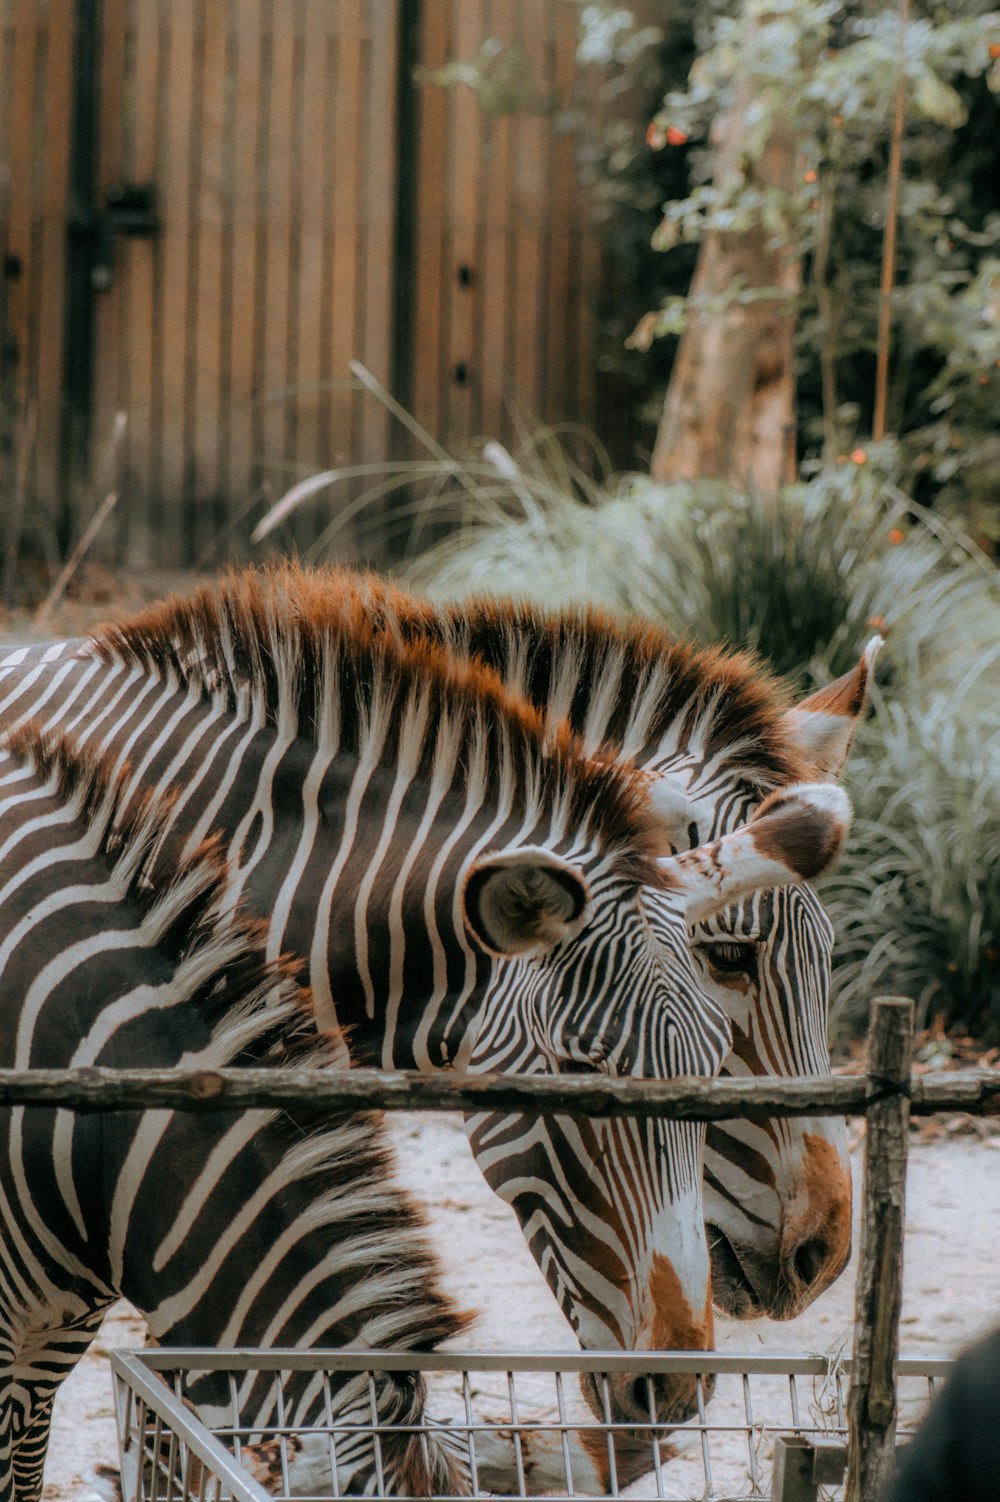 zebra eating grass during daytime